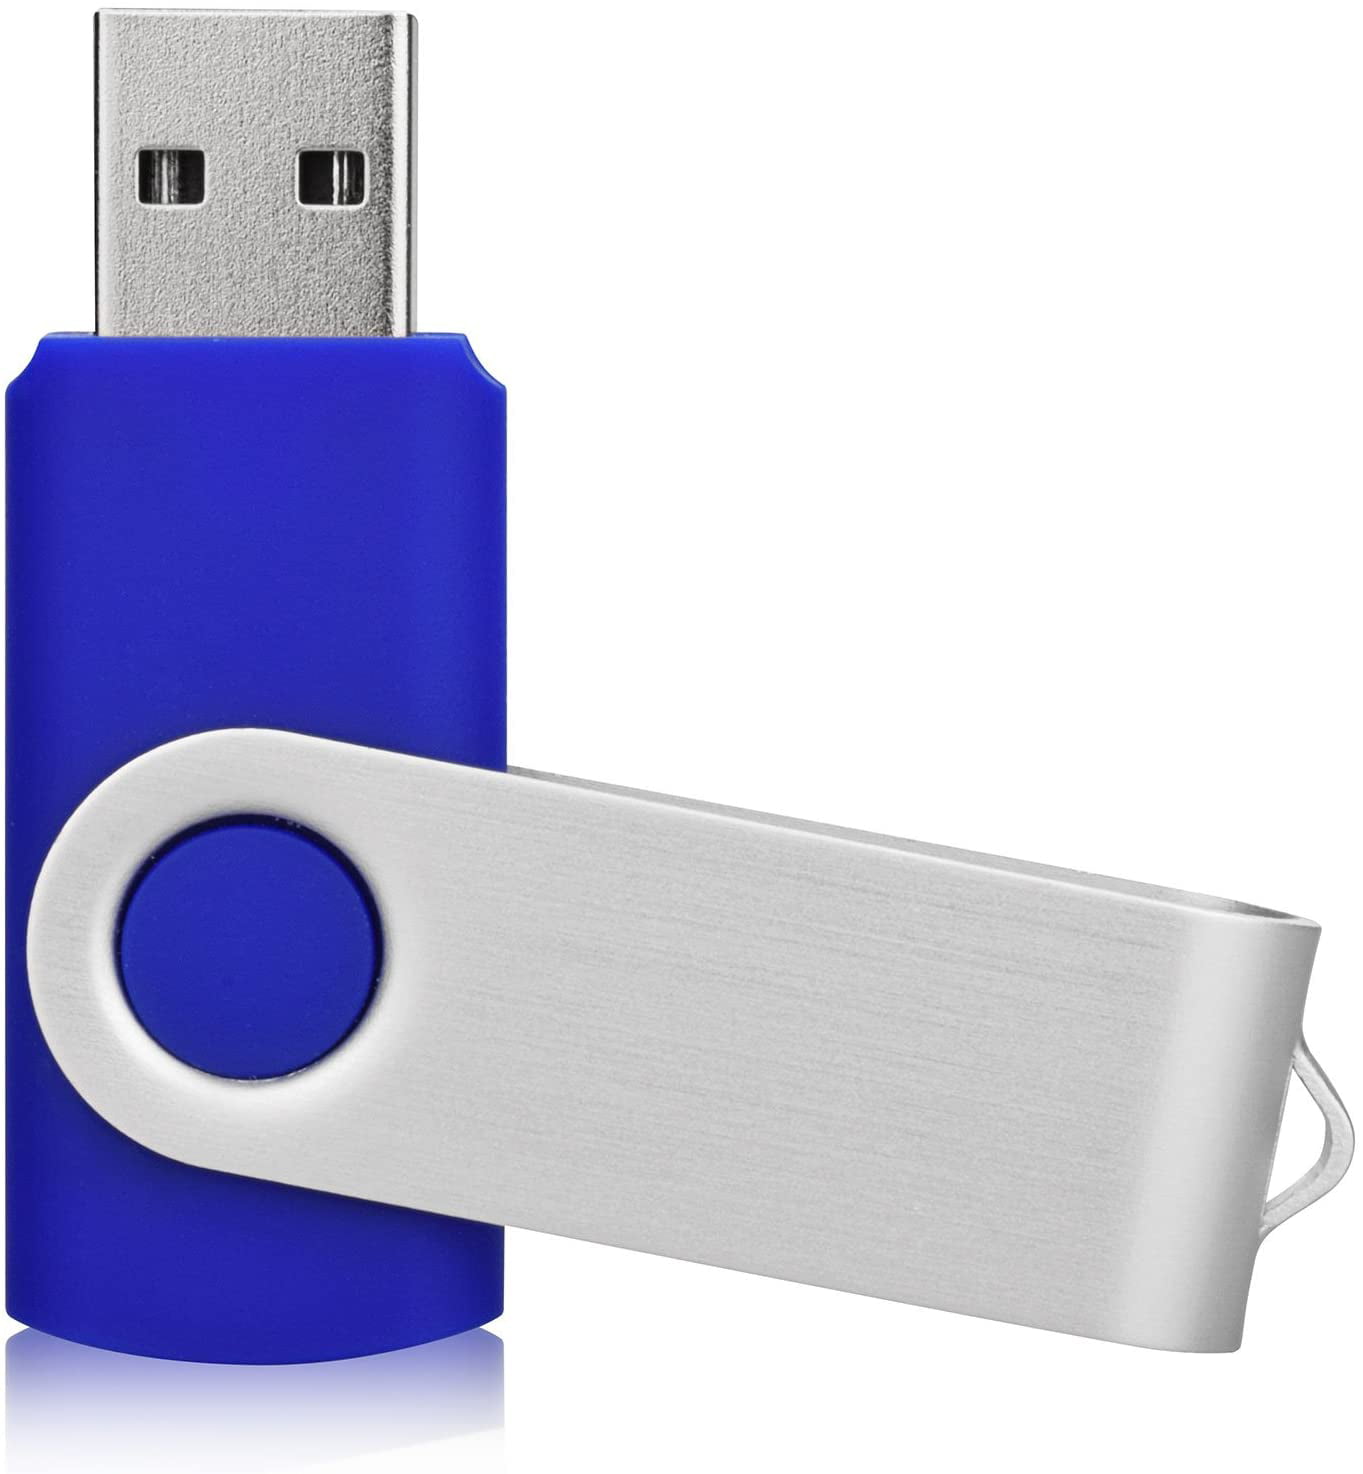 Blue KEXIN 32 GB USB Stick Flash Drive 32GB USB Key USB Flash Drive USB Drive 32 GB Key Drives Memory Sticks Thumb Drives Pen Drives Zip Drives USB 2.0 5 Pack